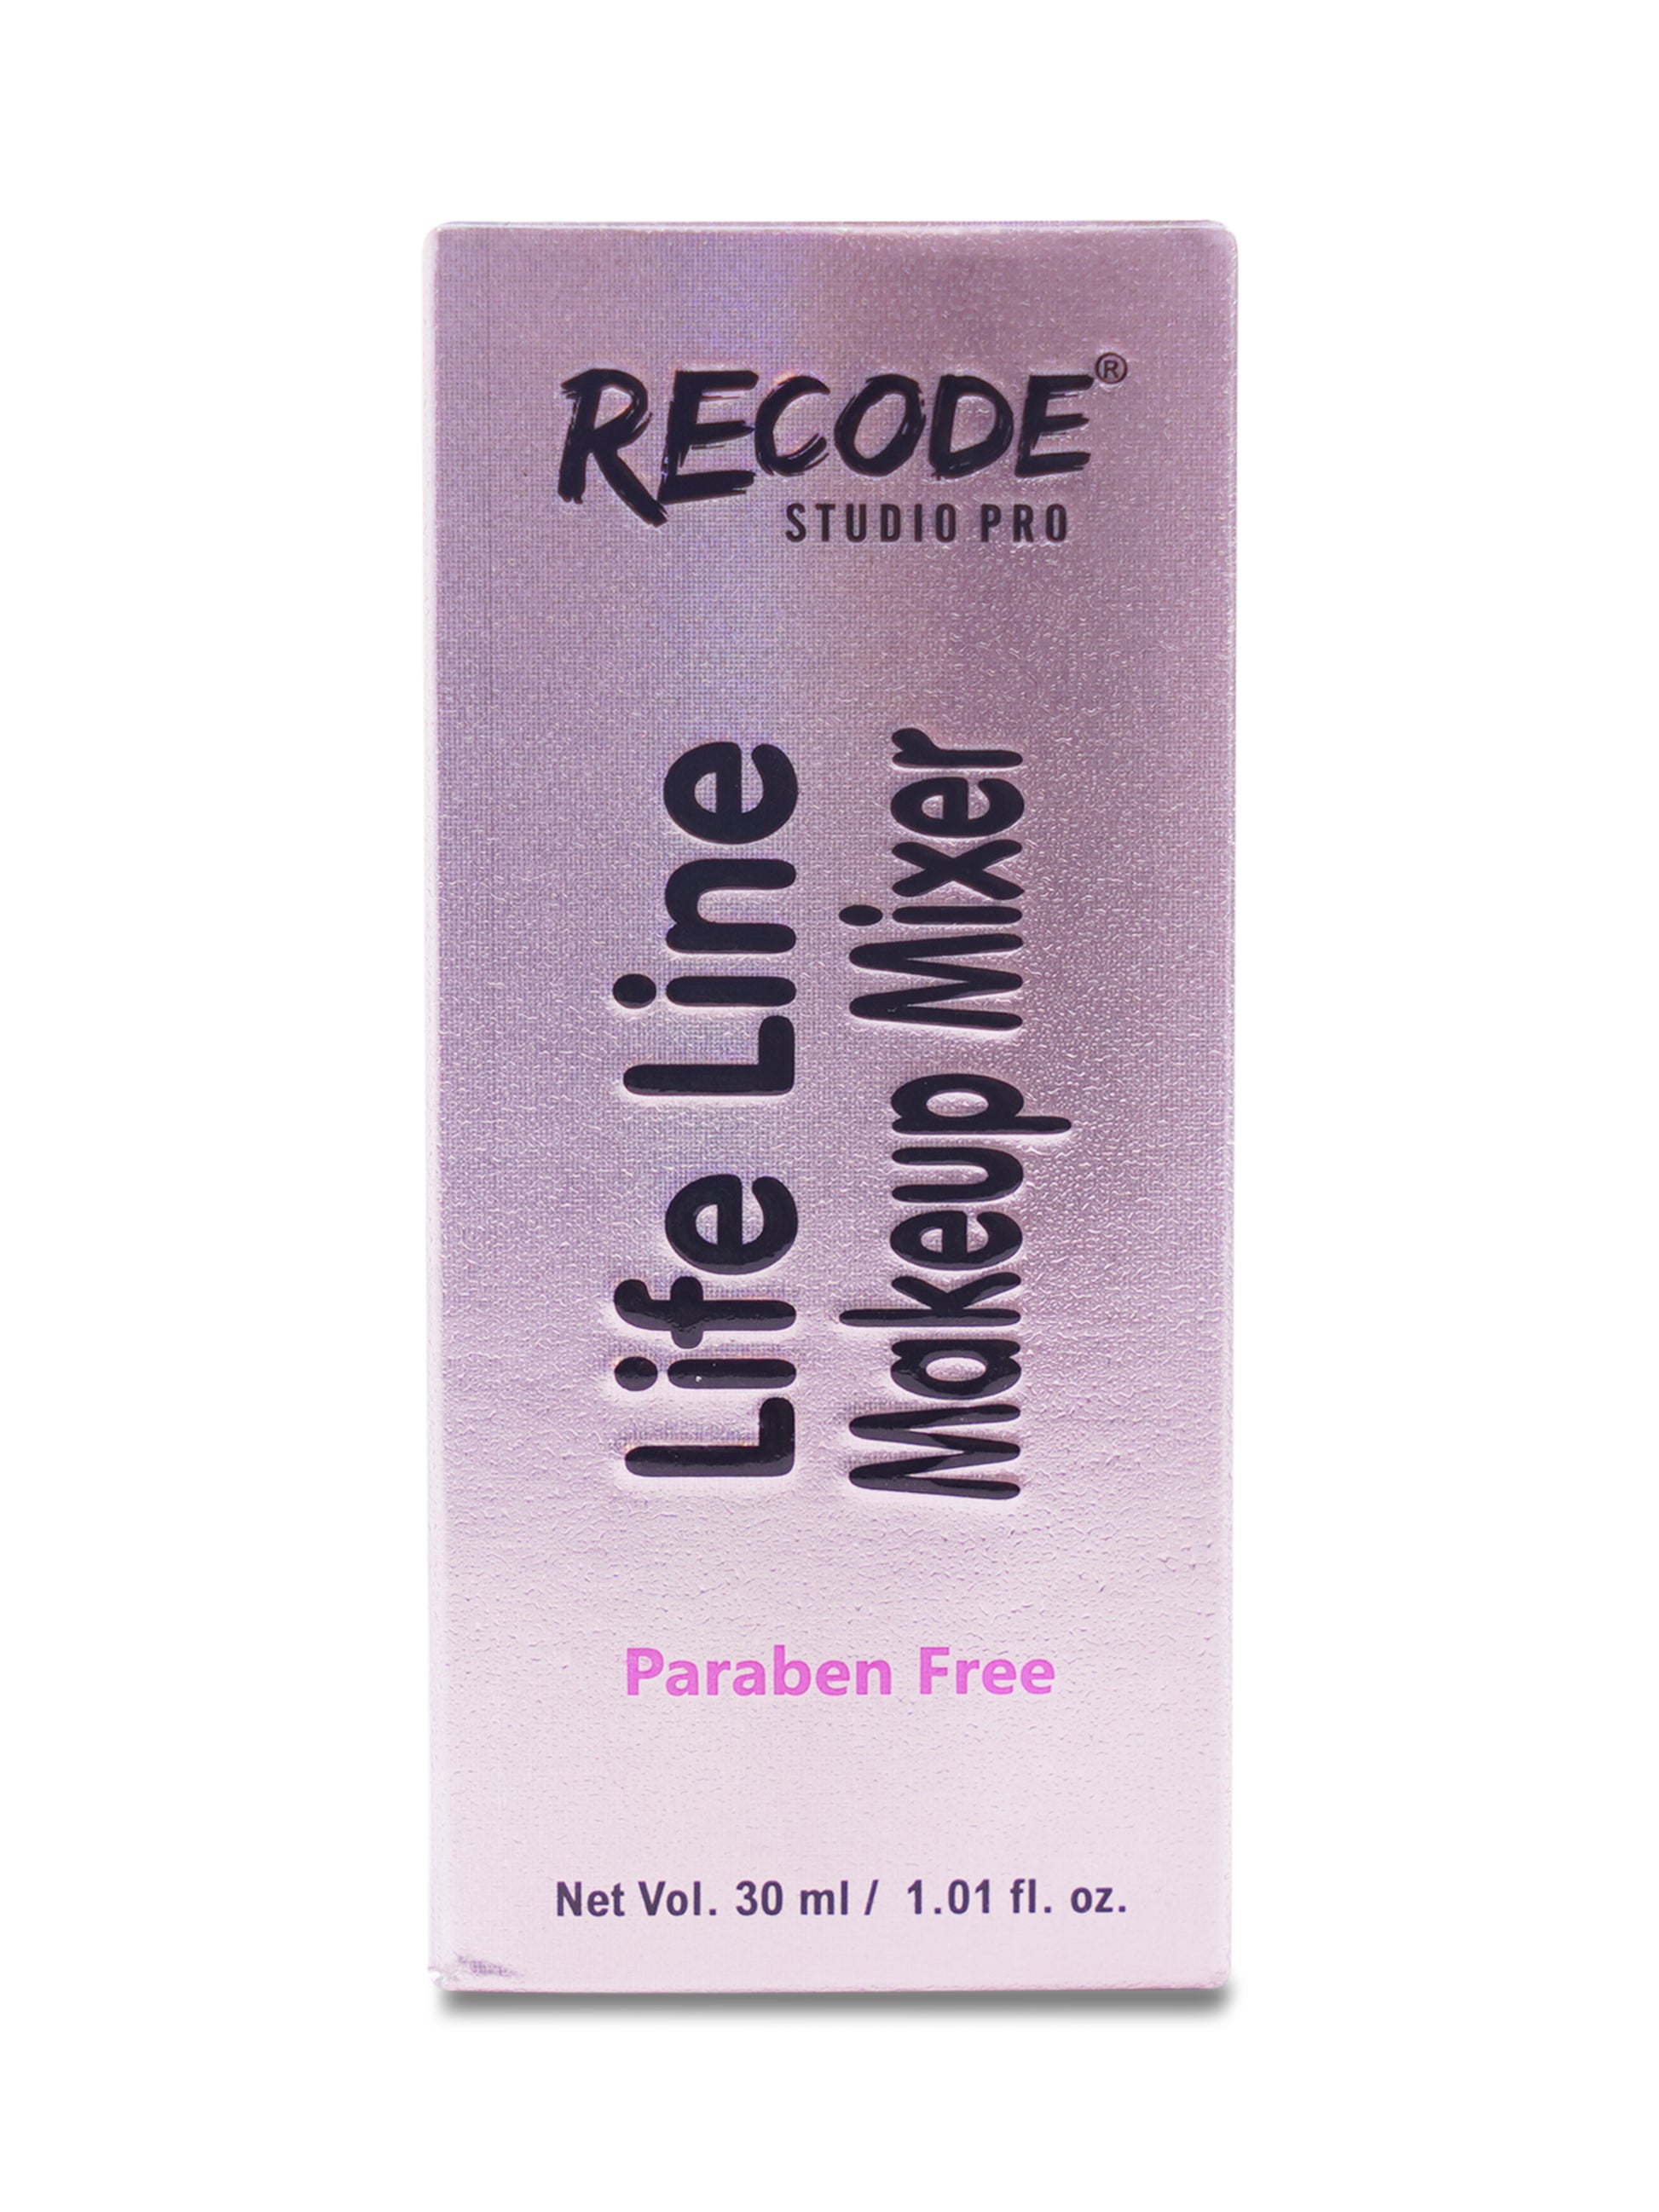 Recode Life Line Makeup Mixer-30 ML